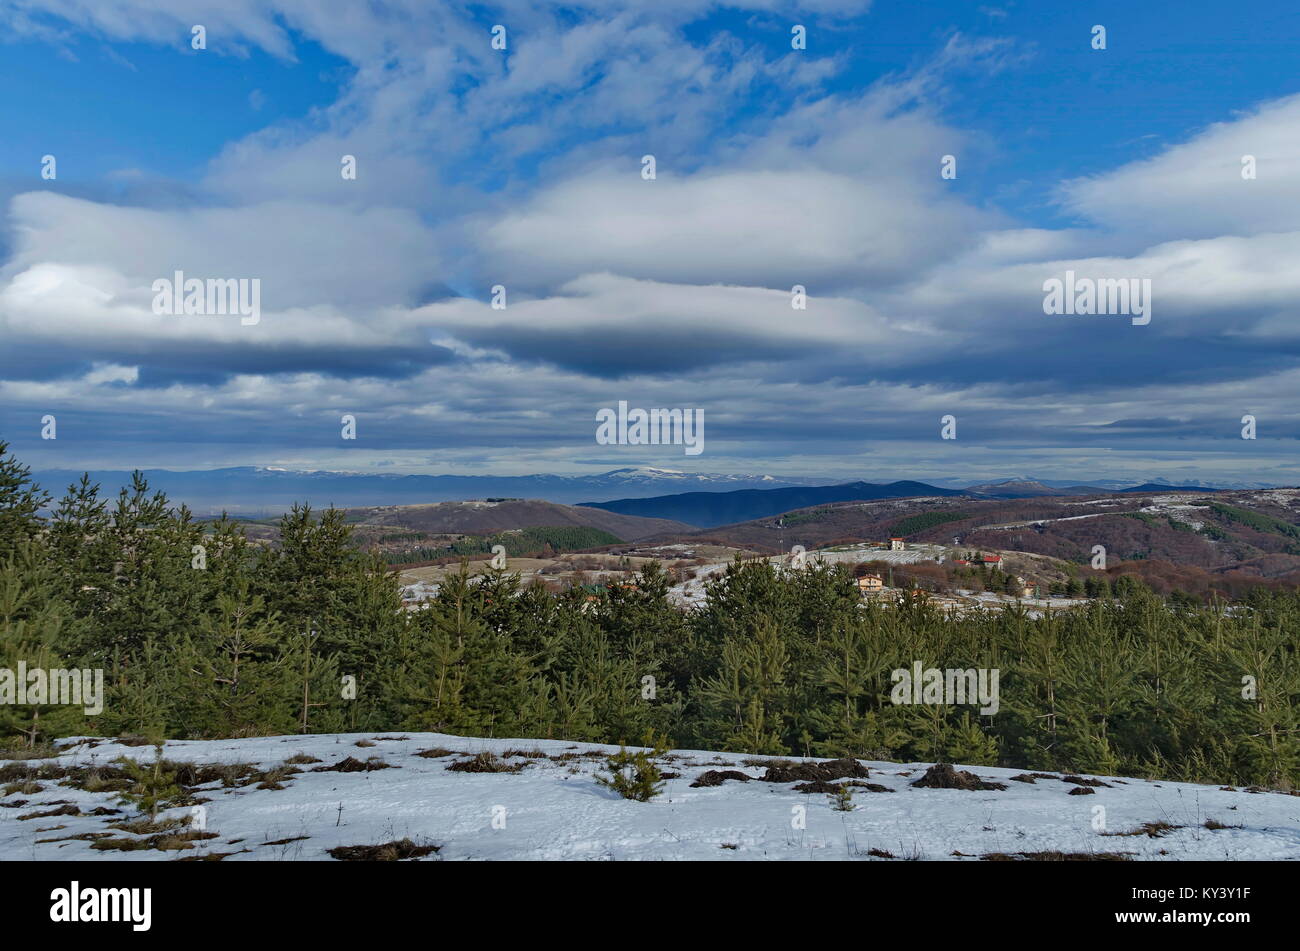 Majestätischen Blick auf bewölkter Himmel, im Winter die Berge, verschneite Lichtung, Wohnviertel, Nadel- und Laubwald von Plana Berg in Richtung Balkan mounta Stockfoto